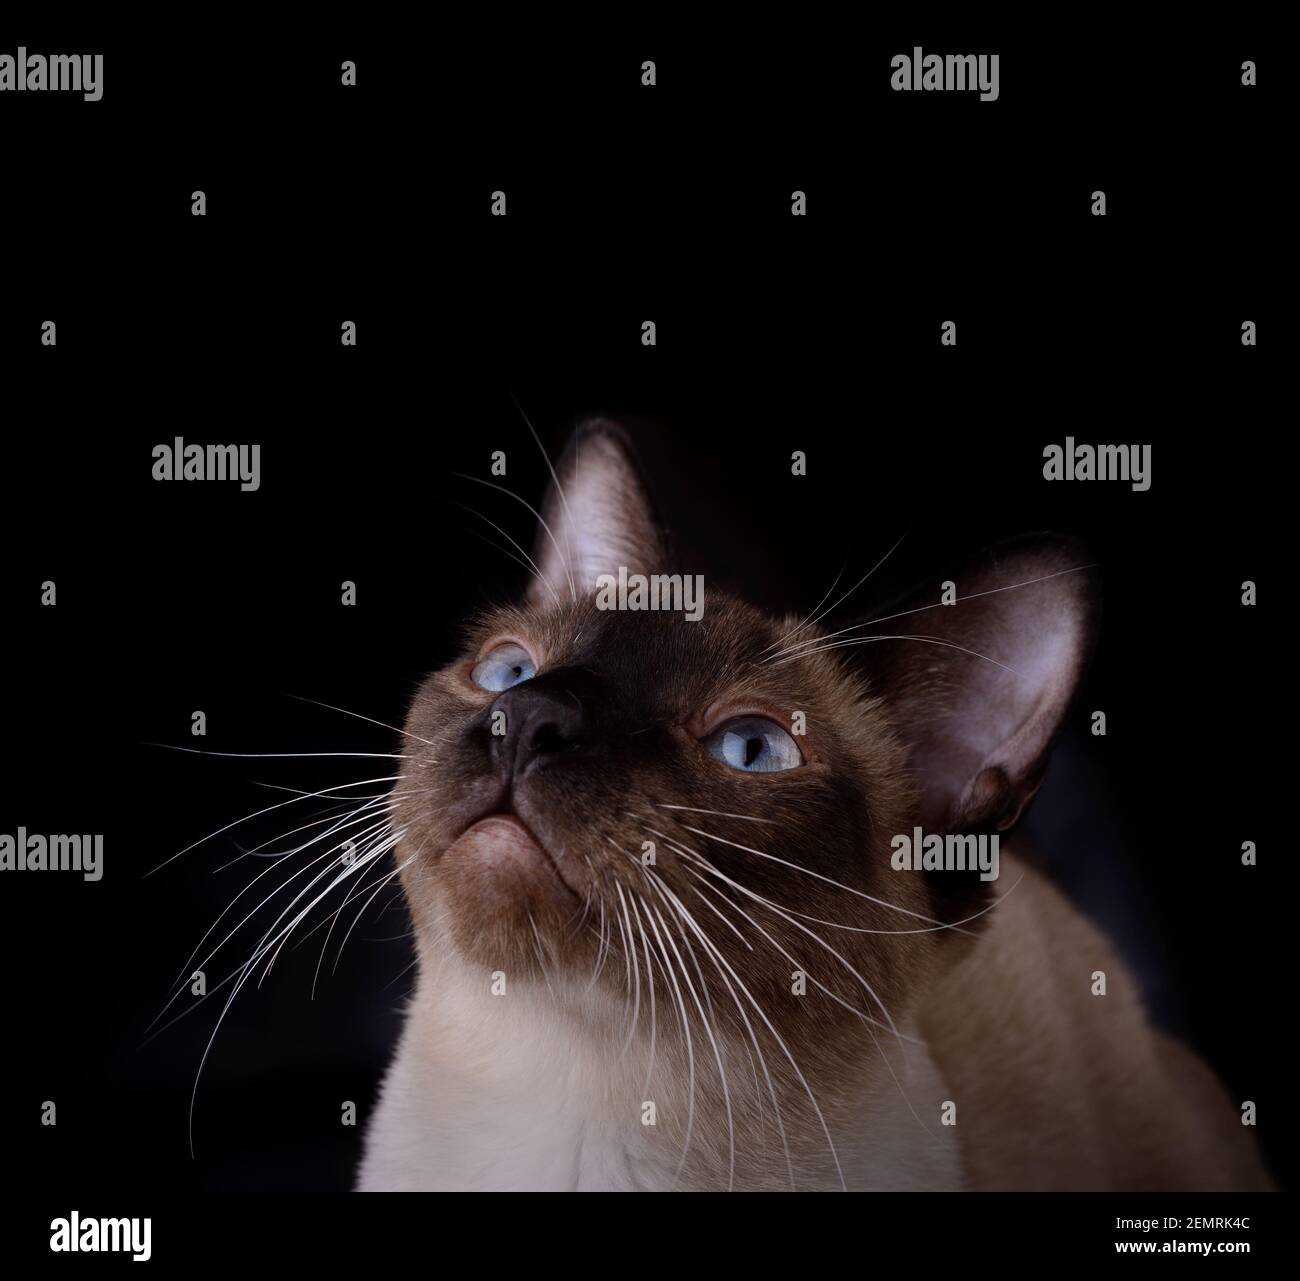 Bel gatto siamese che guarda sopra di lui, nello spazio della copia; su sfondo scuro Foto Stock